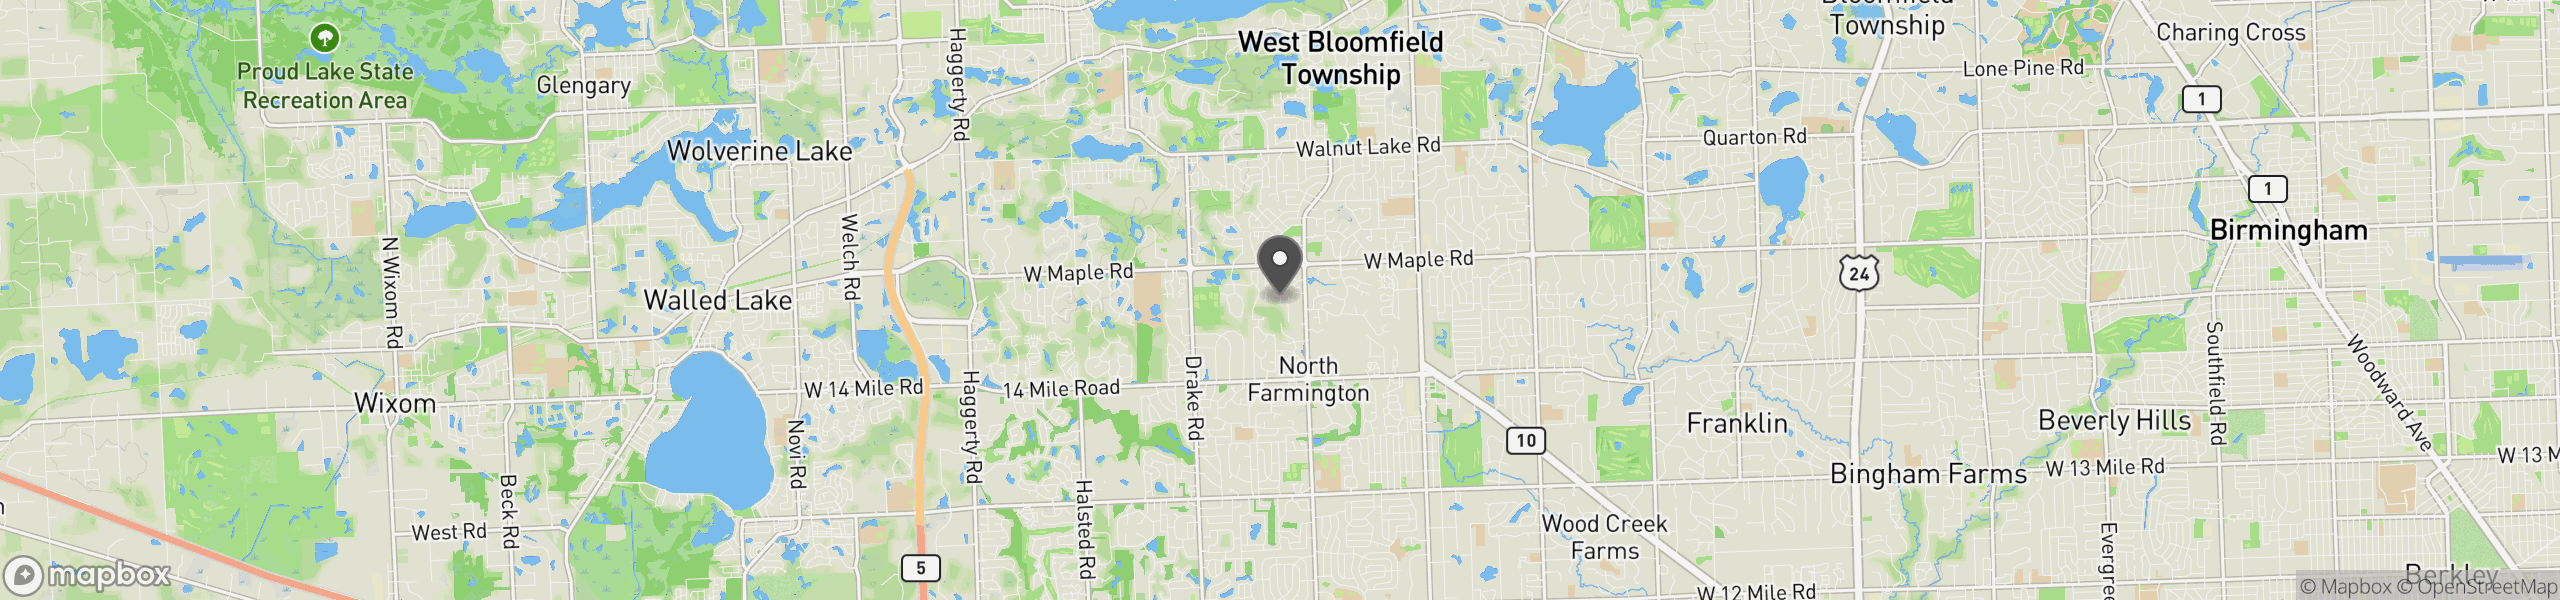 West Bloomfield, MI 48322